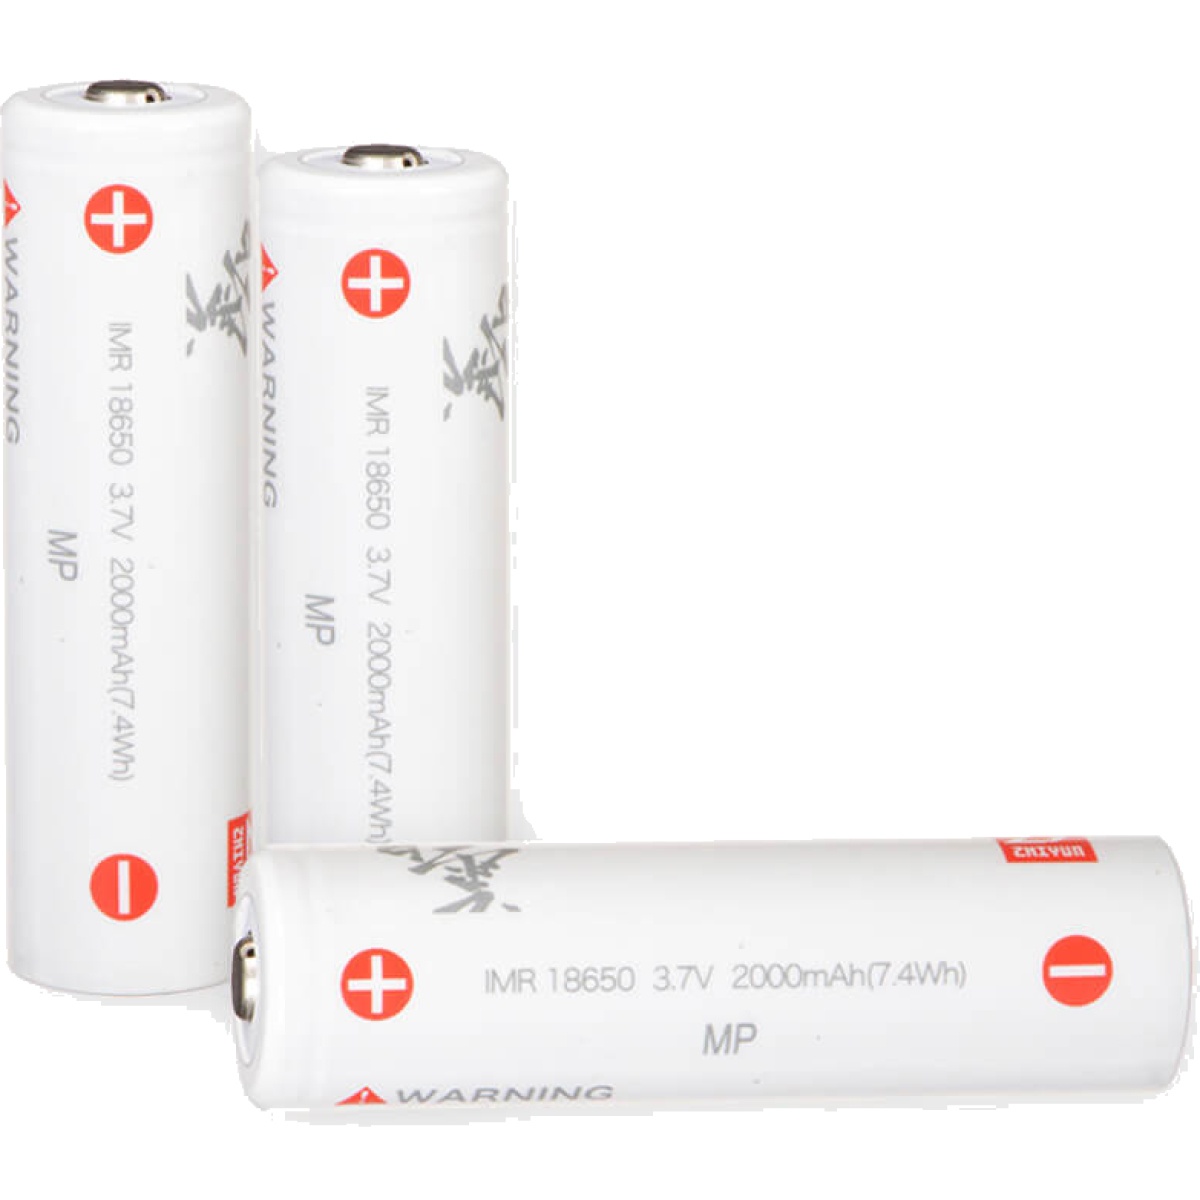 Zhiyun Battery Pack 3 IMR18650 für Crane 2/Crane 3